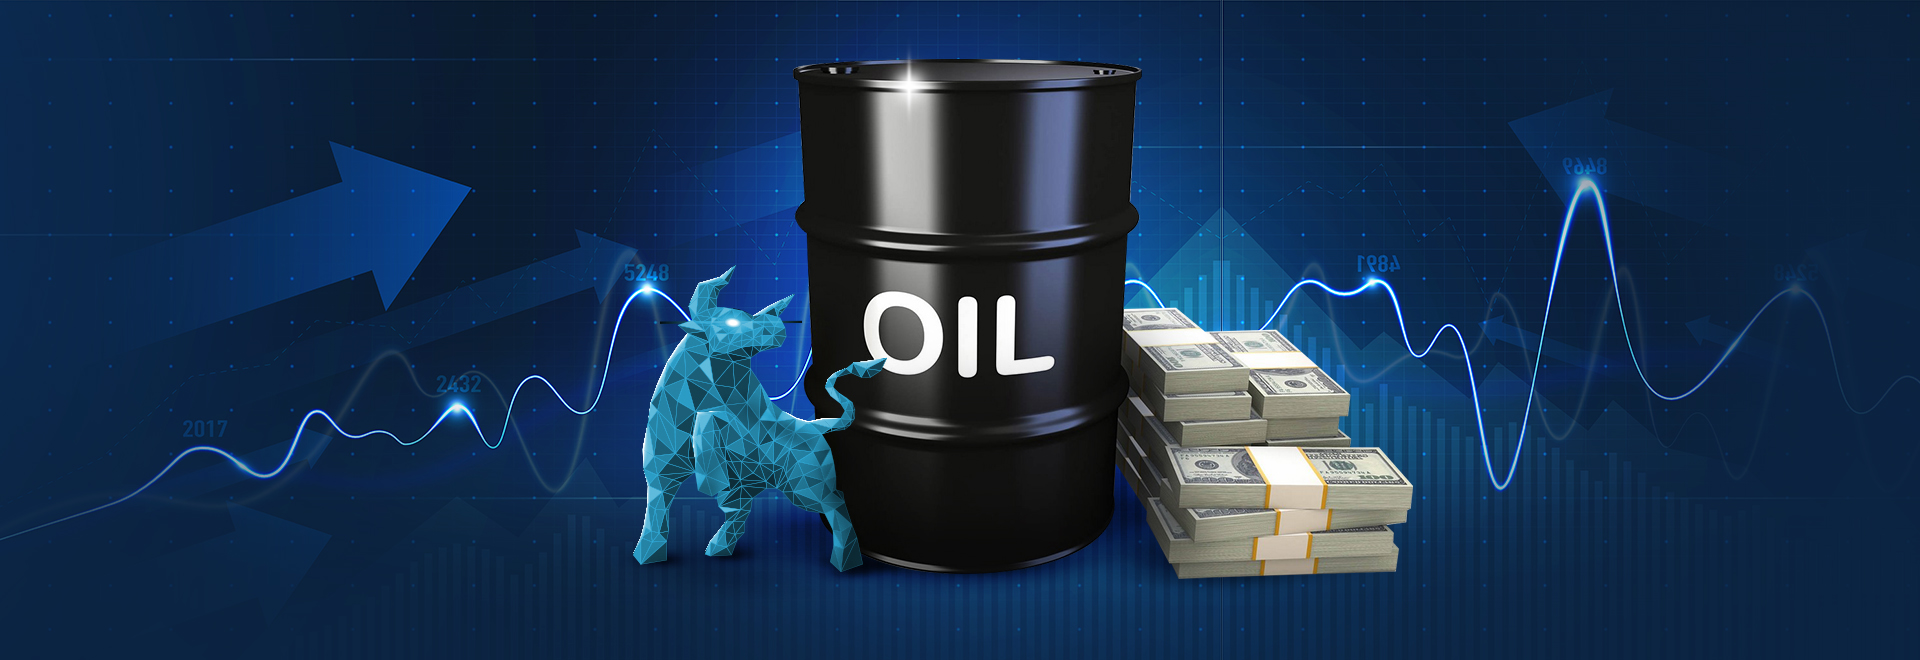 افزایش قیمت نفت به دنبال کاهش ذخایر نفتی در آمریکا